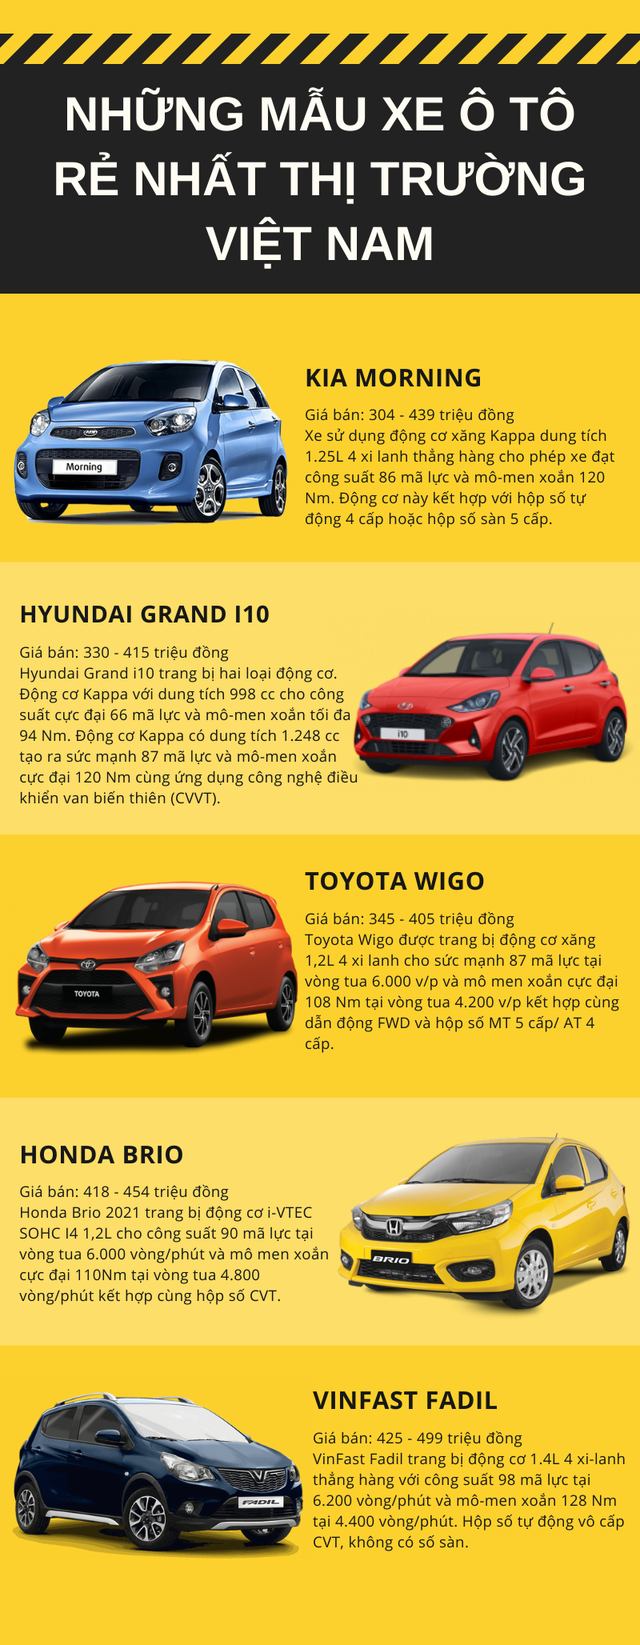 Top 5 xe ô tô giá rẻ nhất Việt Nam hiện nay, giá chỉ từ 304 triệu đồng - Ảnh 1.